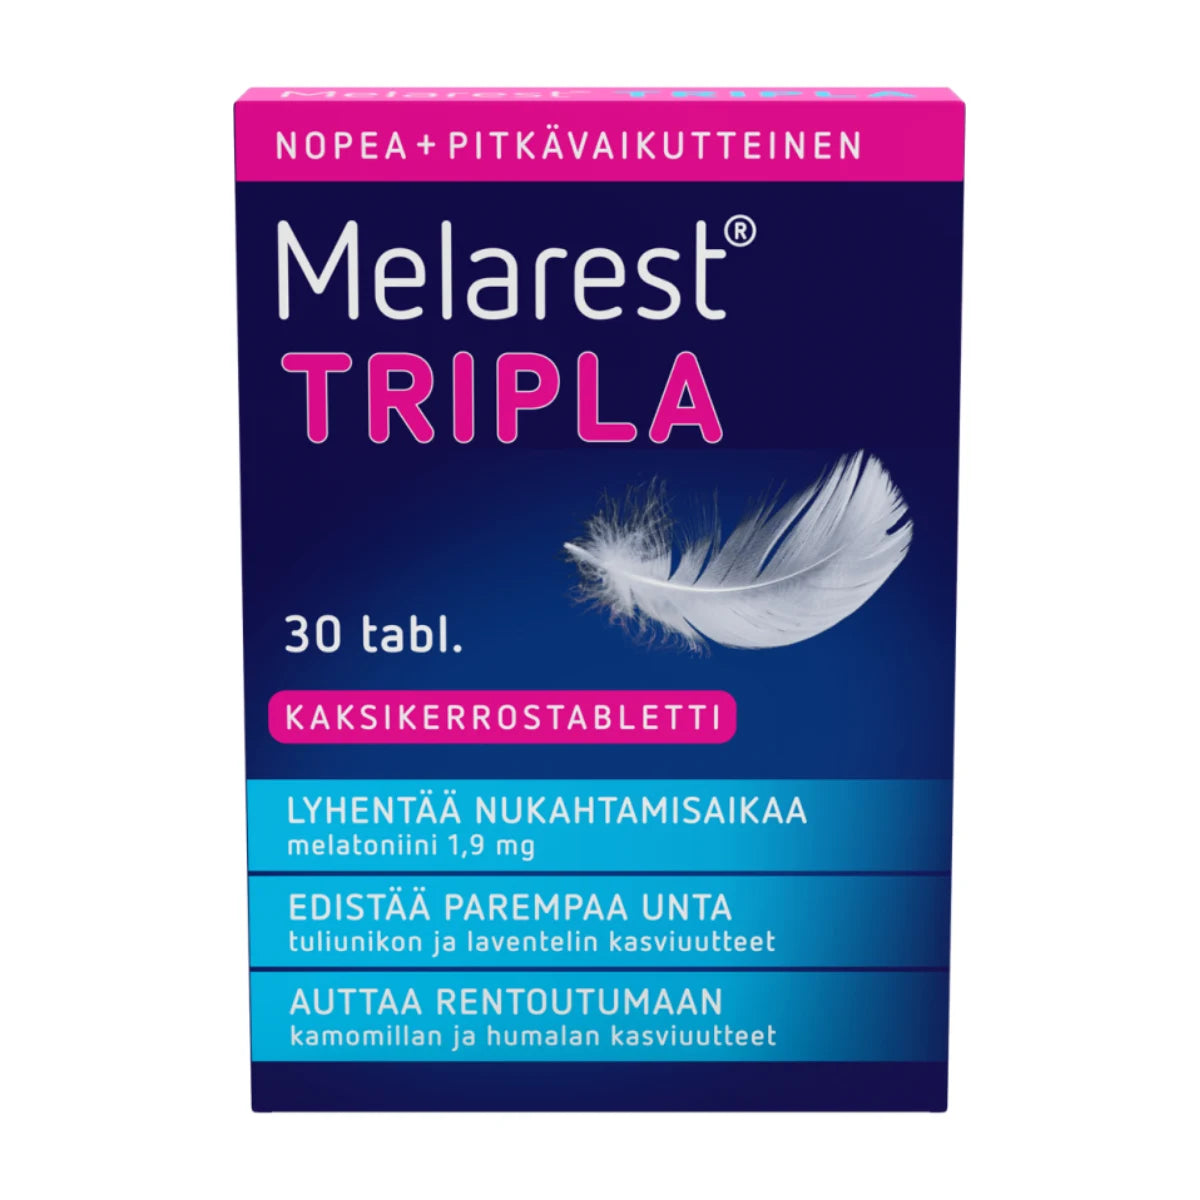 MELAREST Tripla tabletti 30 kpl kolmivaikutteinen kaksikerrostabletti